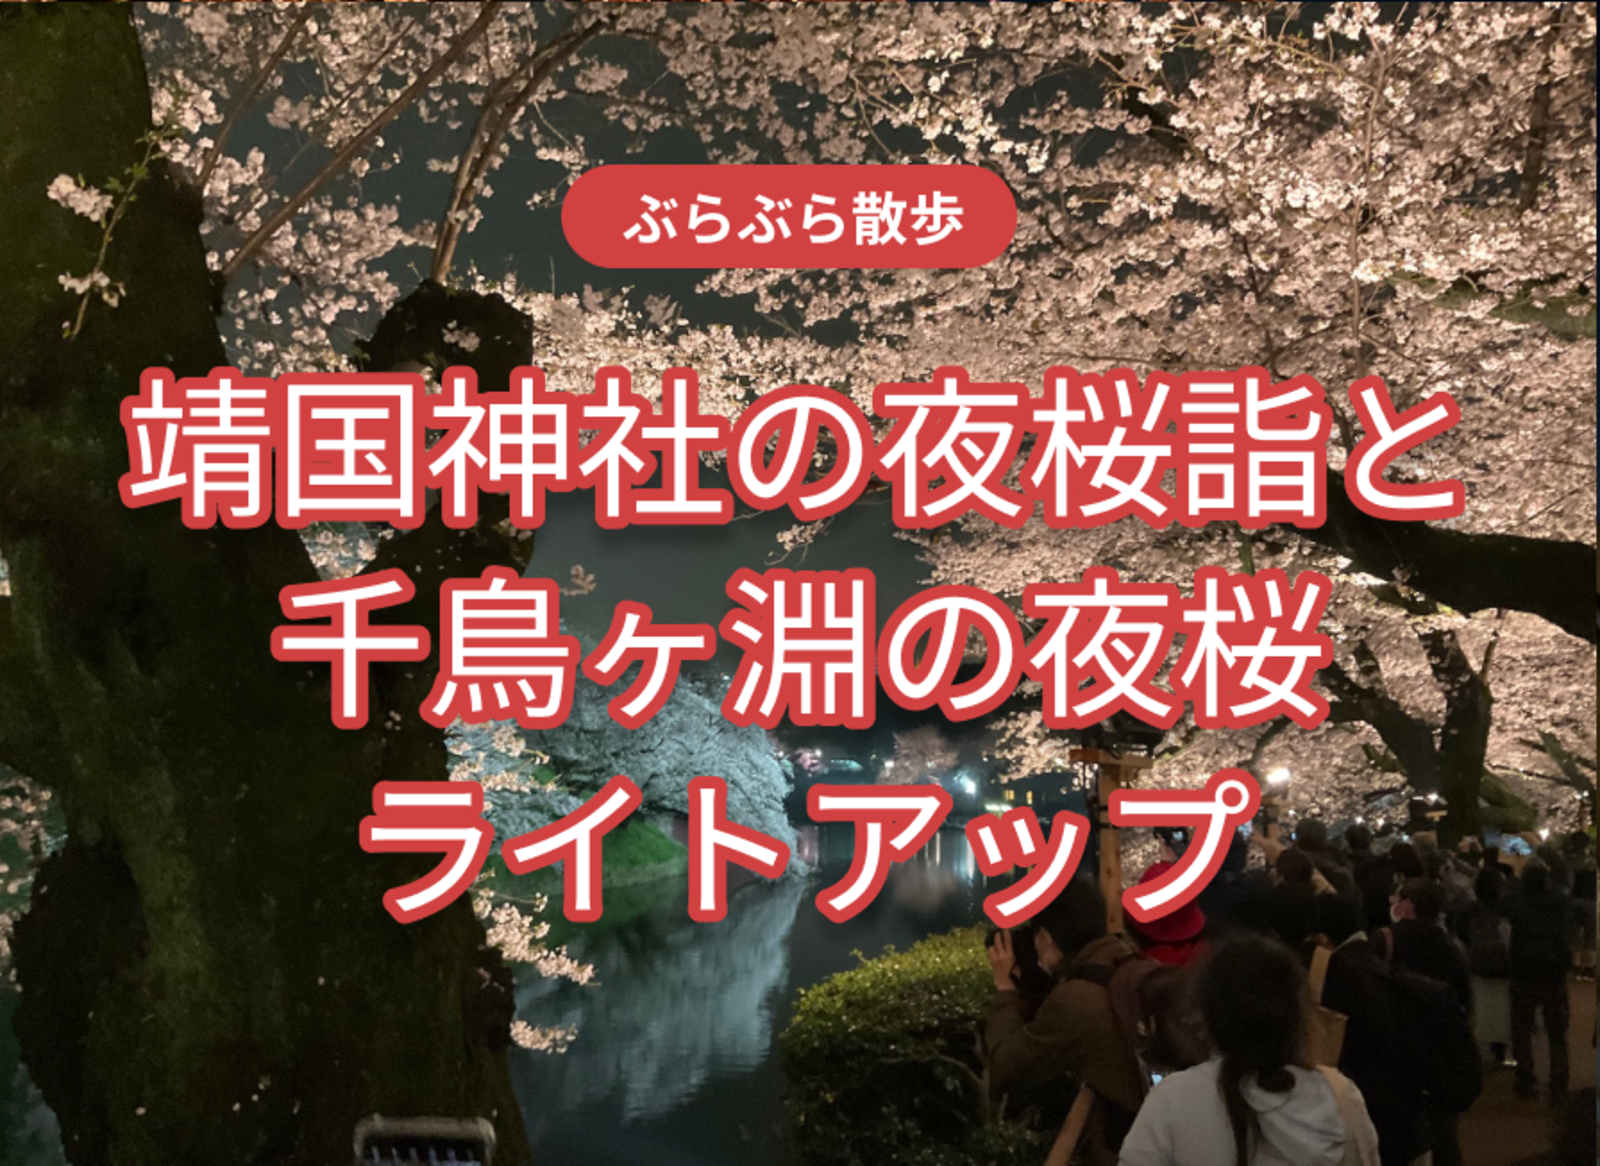 靖国神社の夜桜詣と千鳥ヶ淵の夜桜ライトアップ 4年ぶりのライトアップ